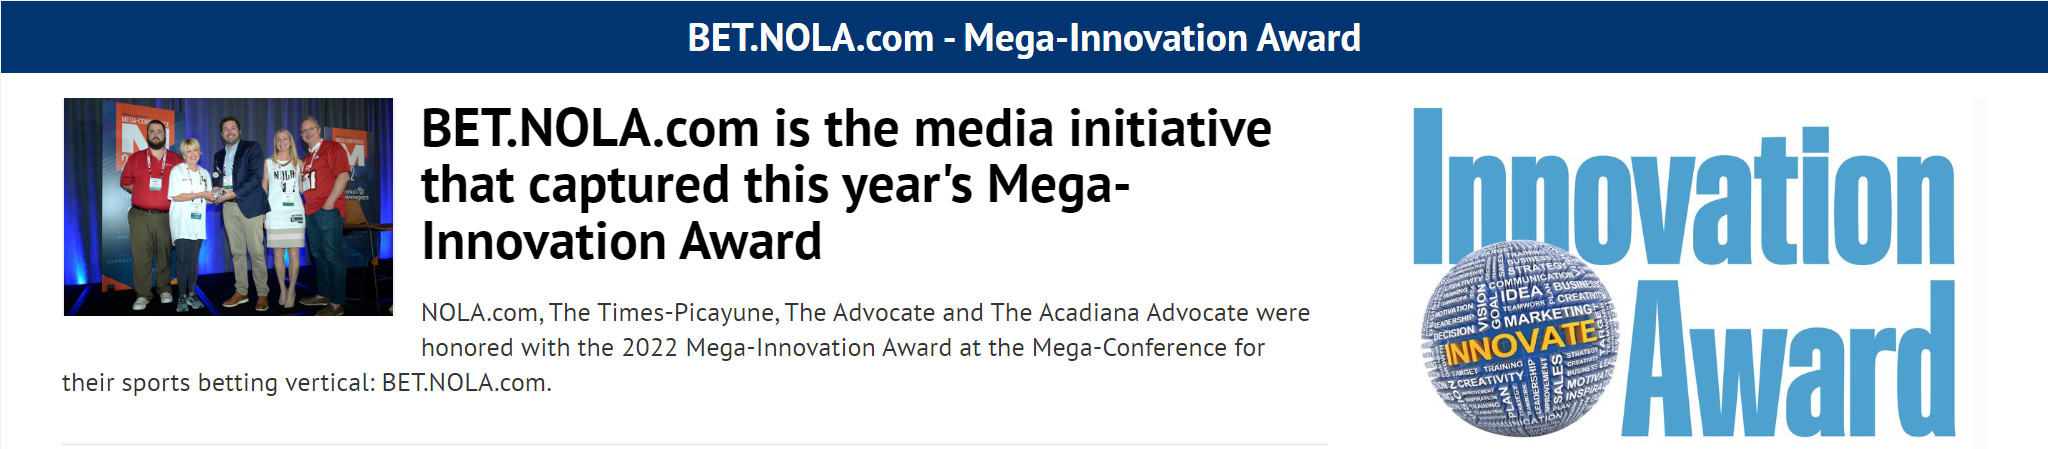 Mega-Innovation Award: Winner 2022 is BET.NOLA